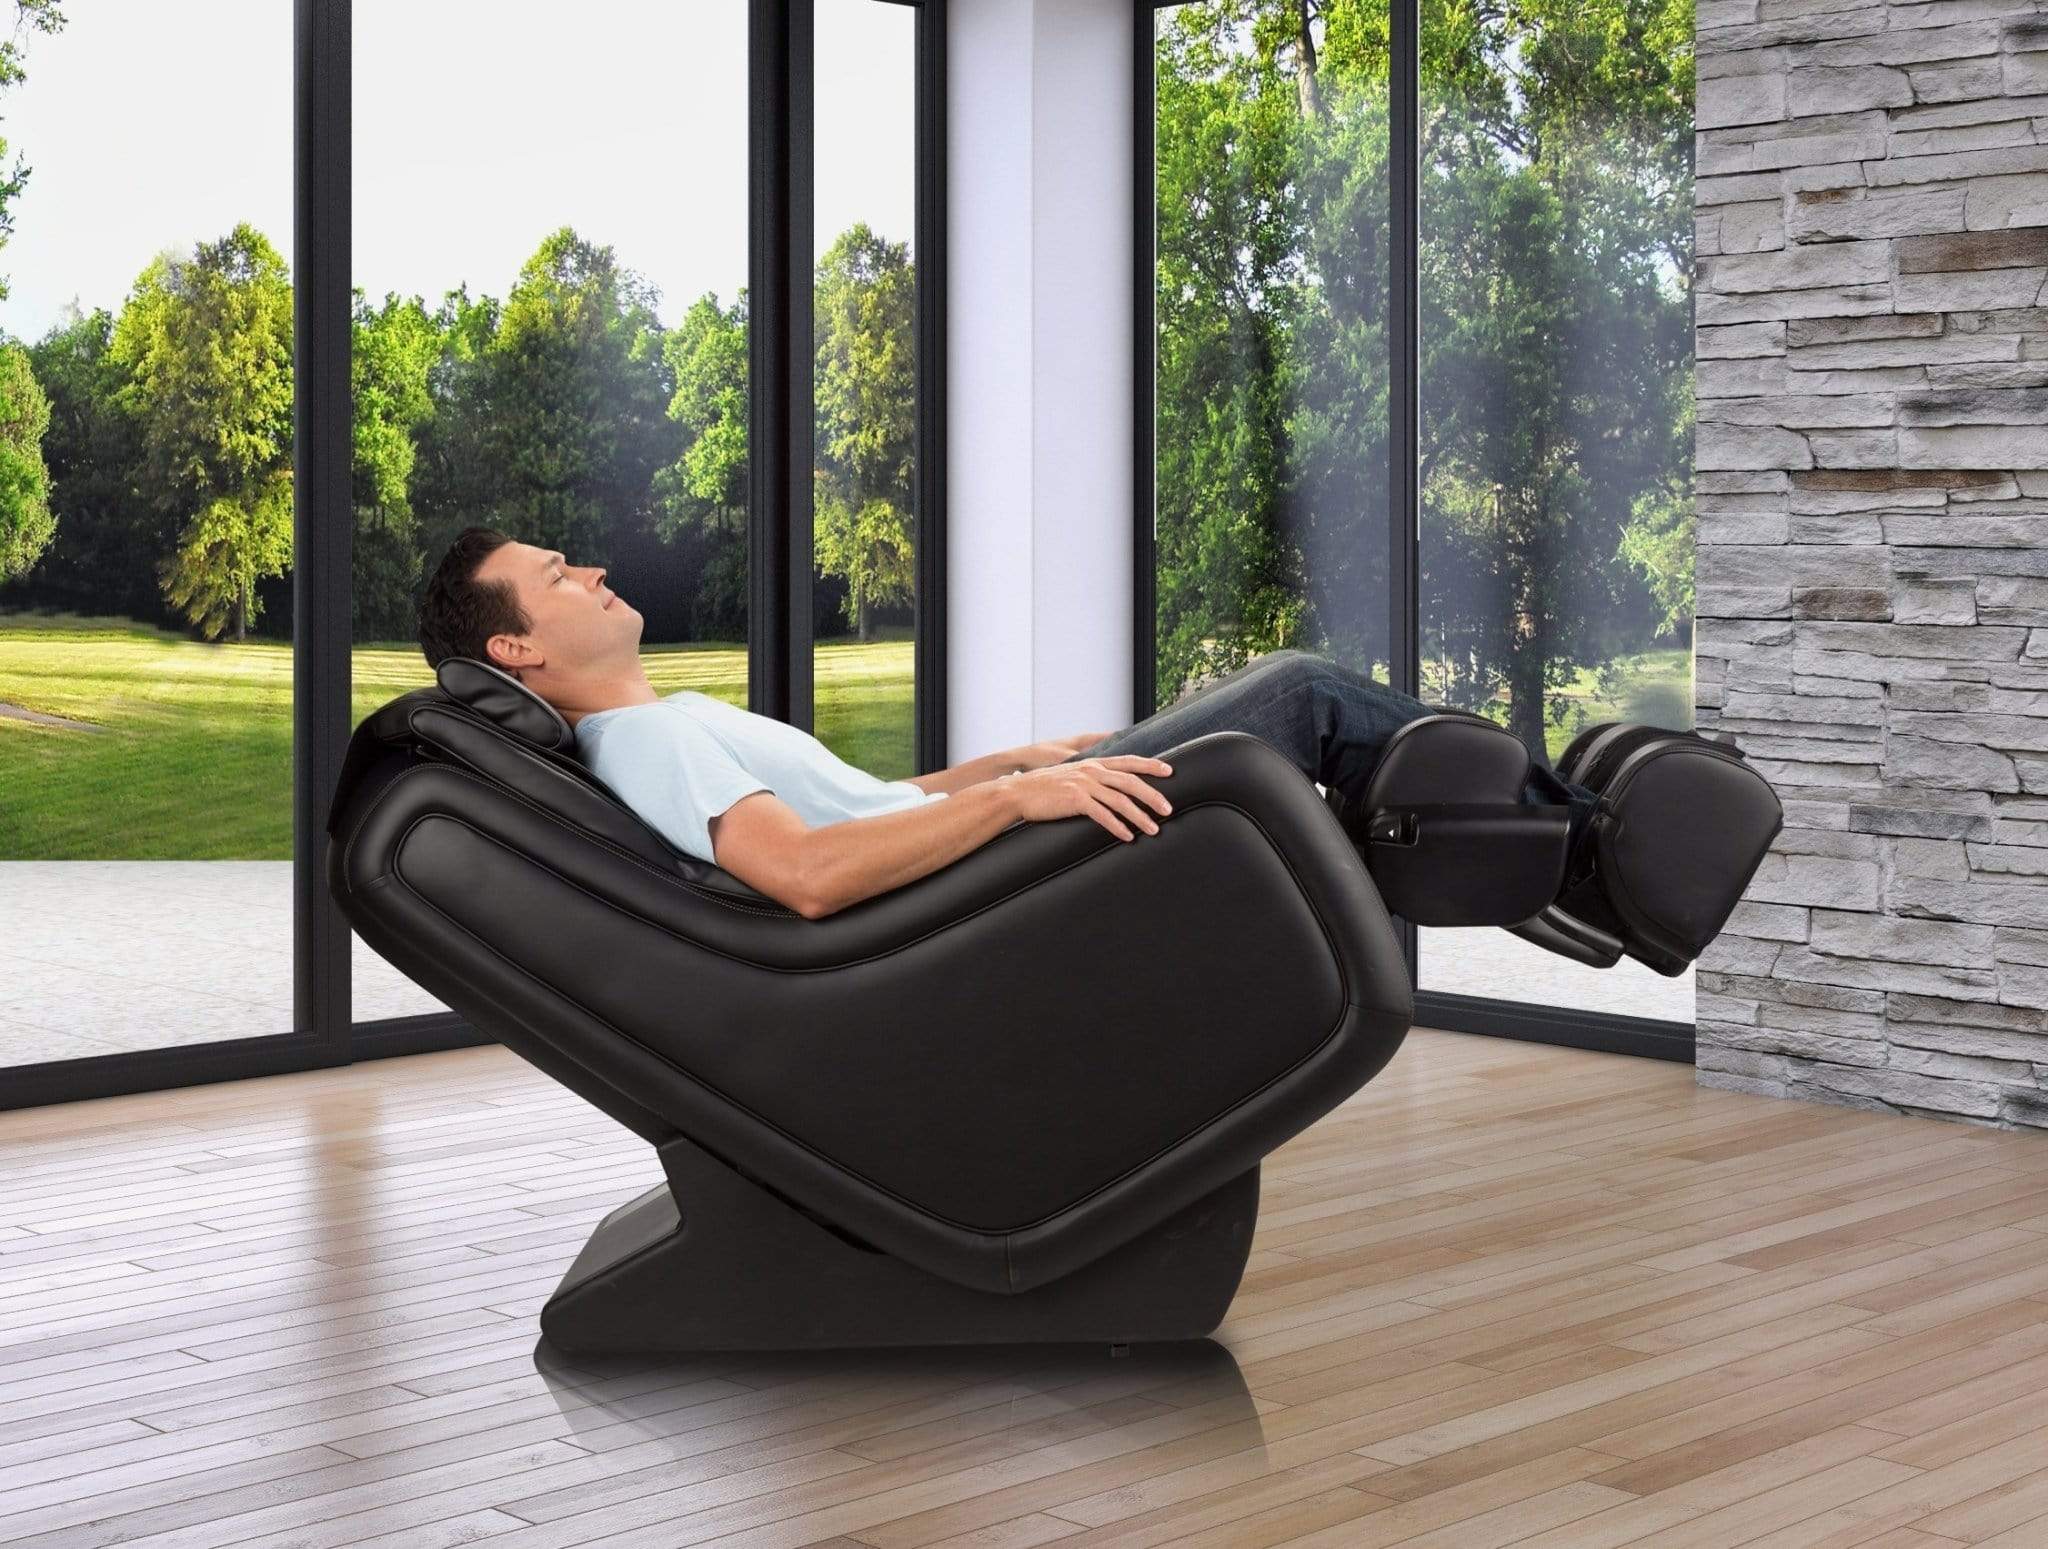 Human TouchMassage ChairHuman Touch ZeroG 5.0 Massage ChairEspressoMassage Chair Heaven